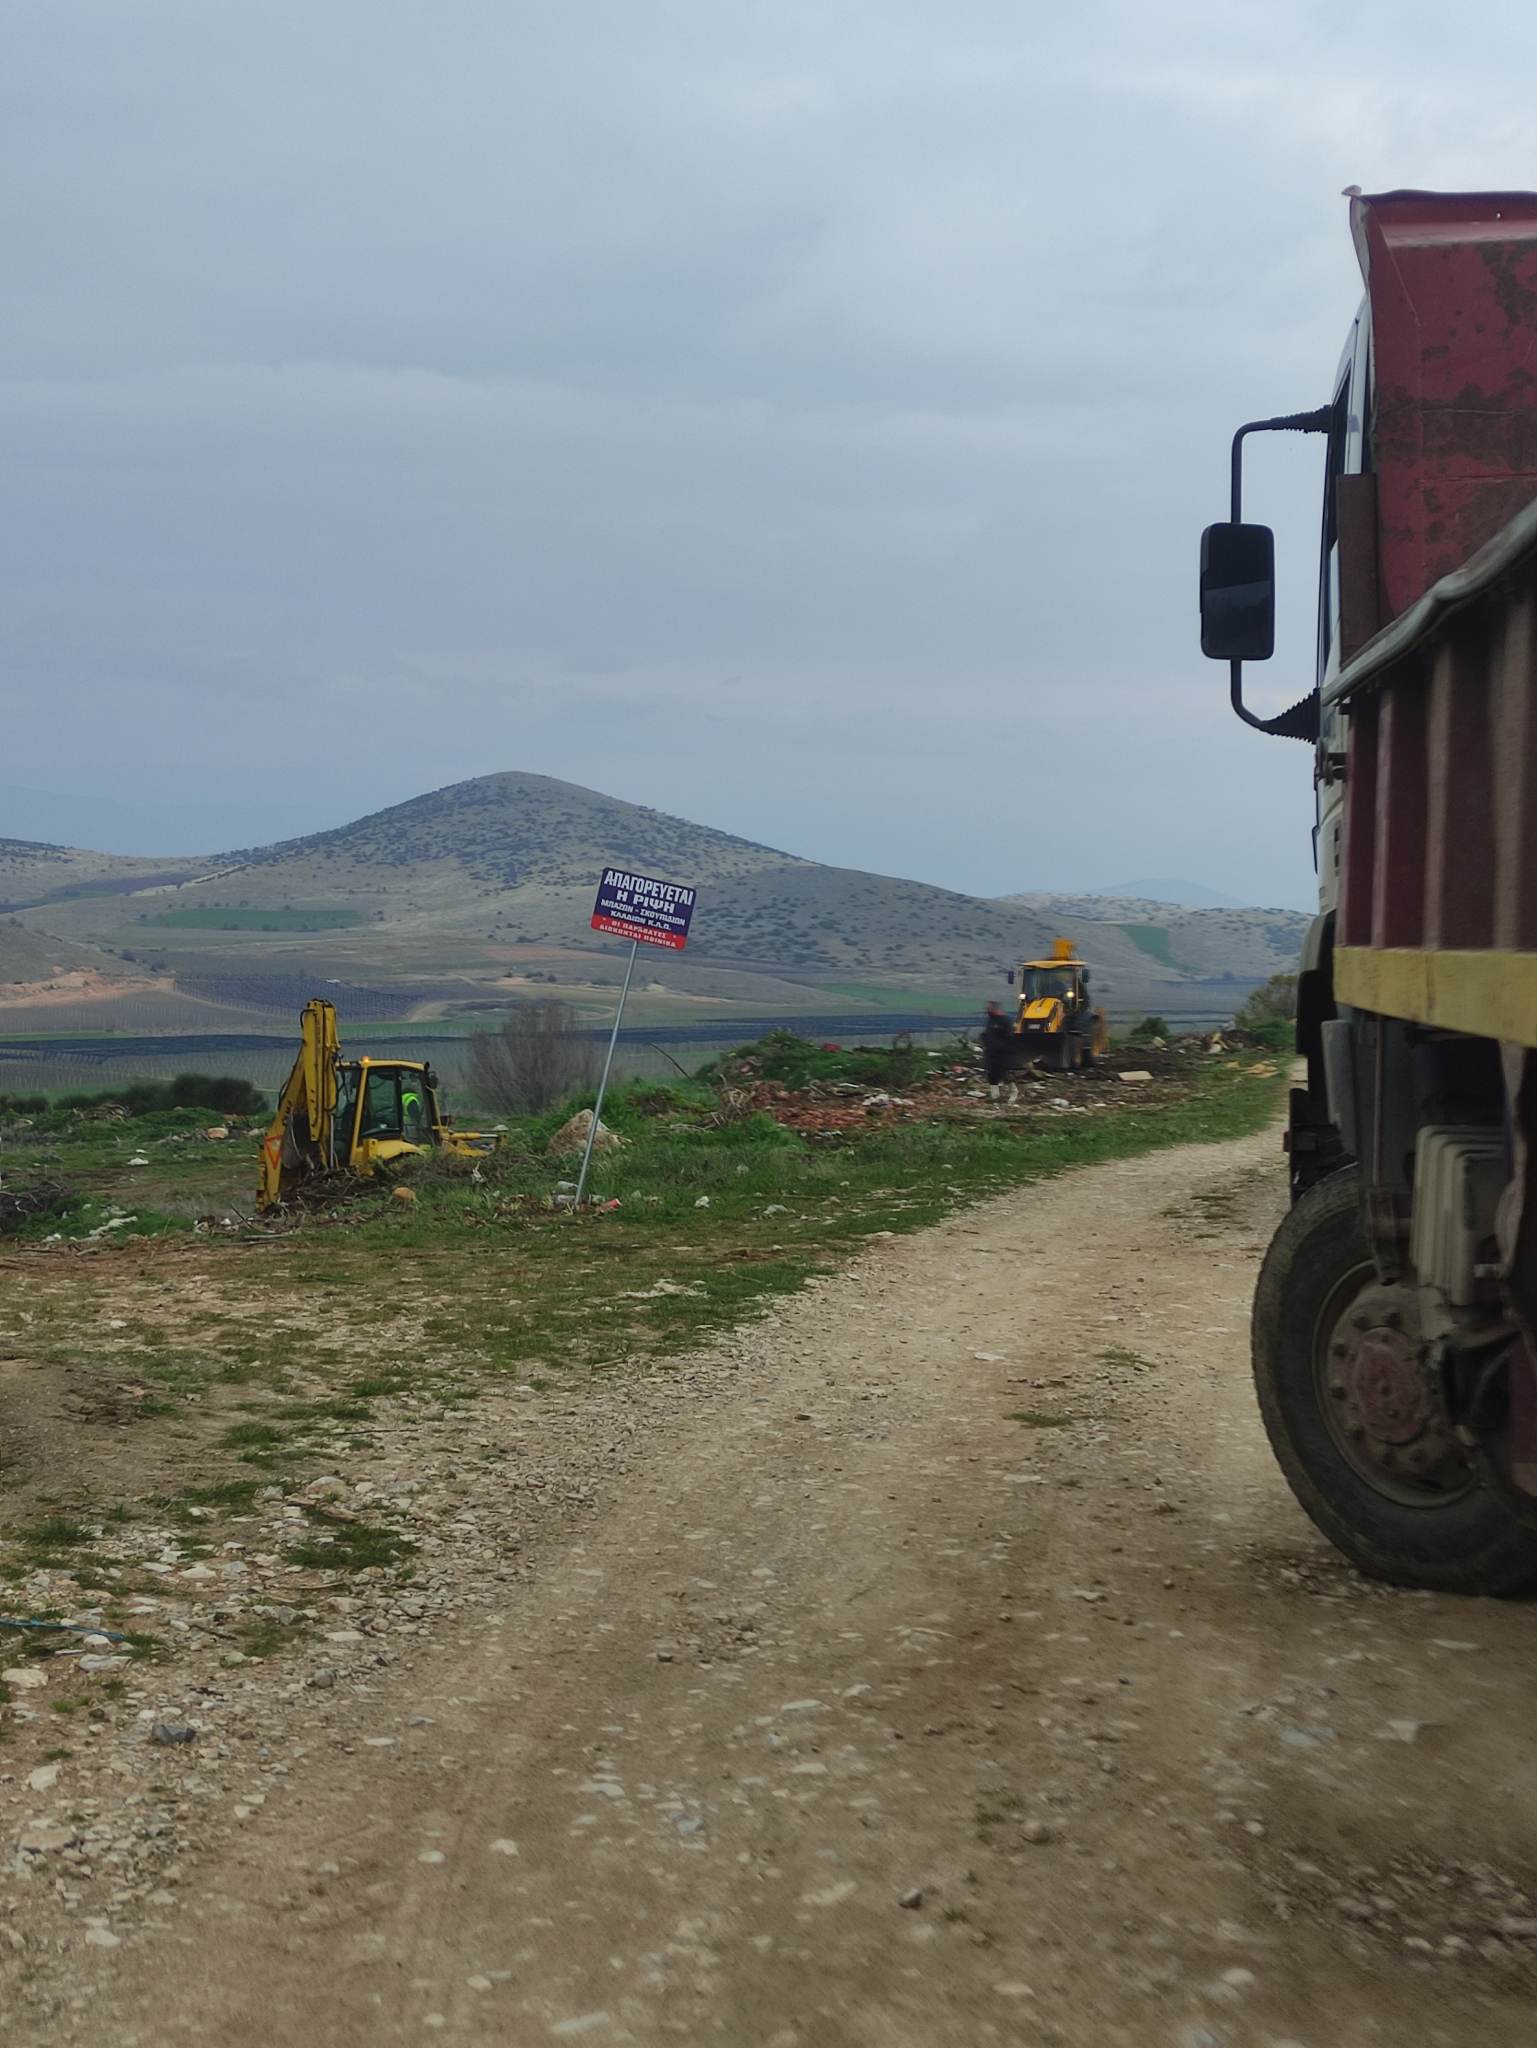 Εορδαία : Συνεργεία του Δήμου καθαρίζουν τον ''μπαζότοπο ''στο Μεσόβουνο Εορδαίας (εικόνες)